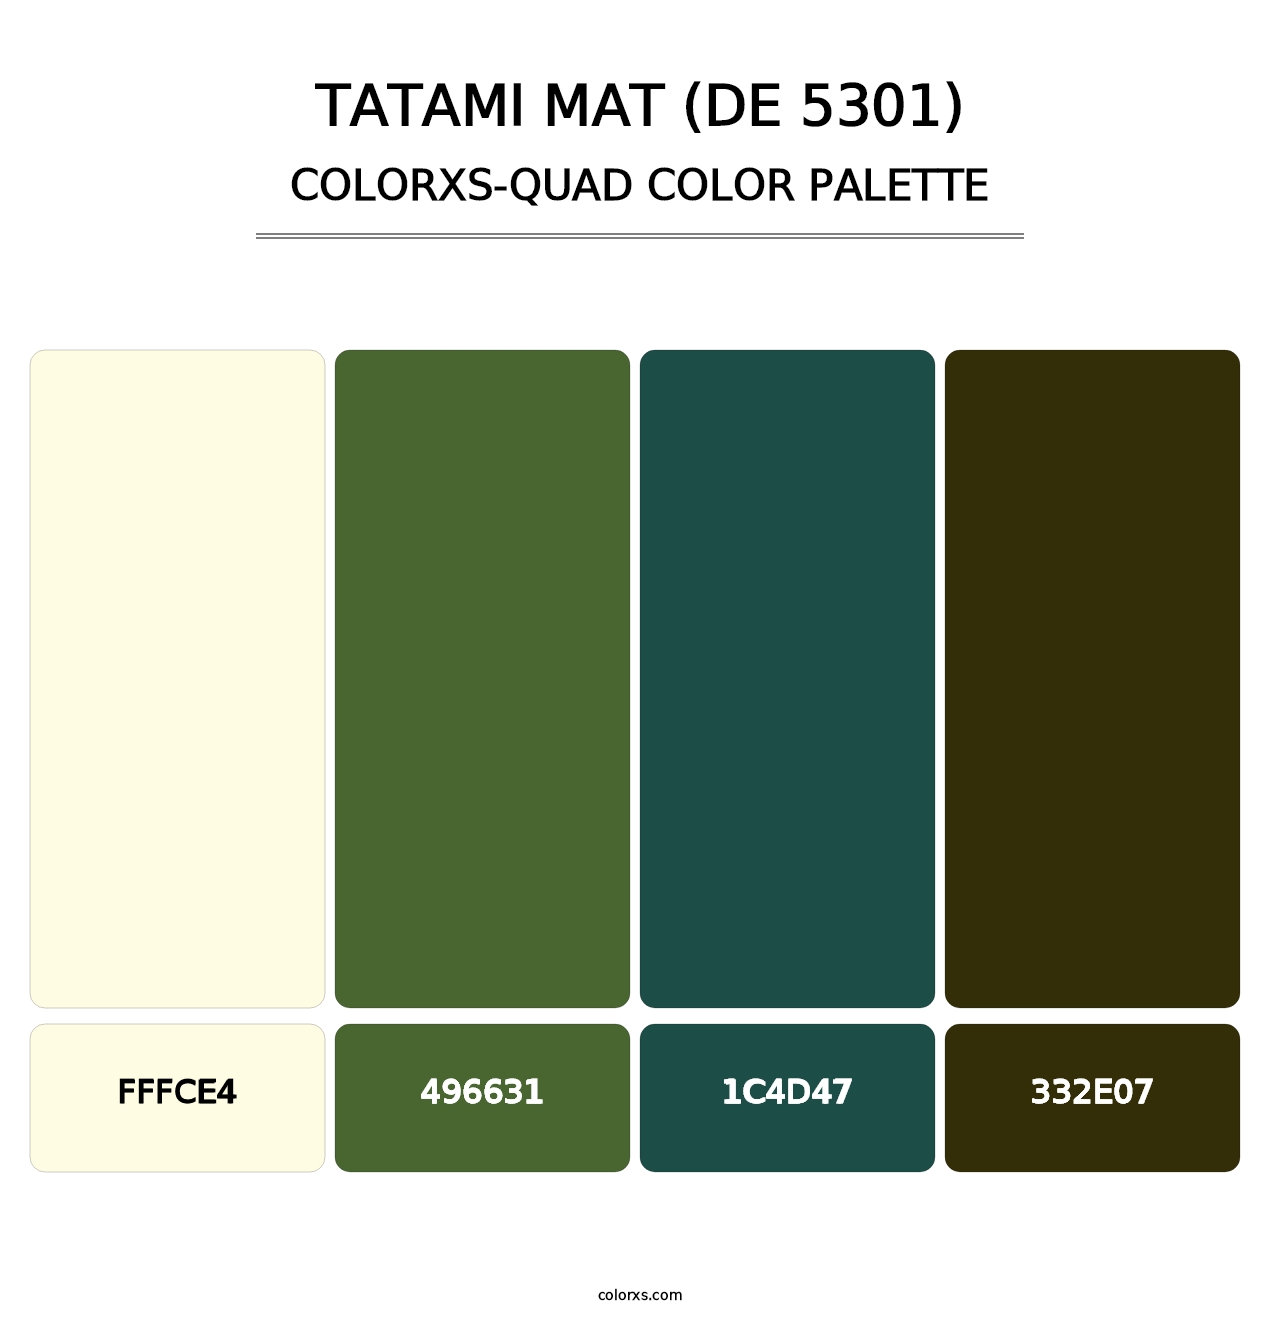 Tatami Mat (DE 5301) - Colorxs Quad Palette